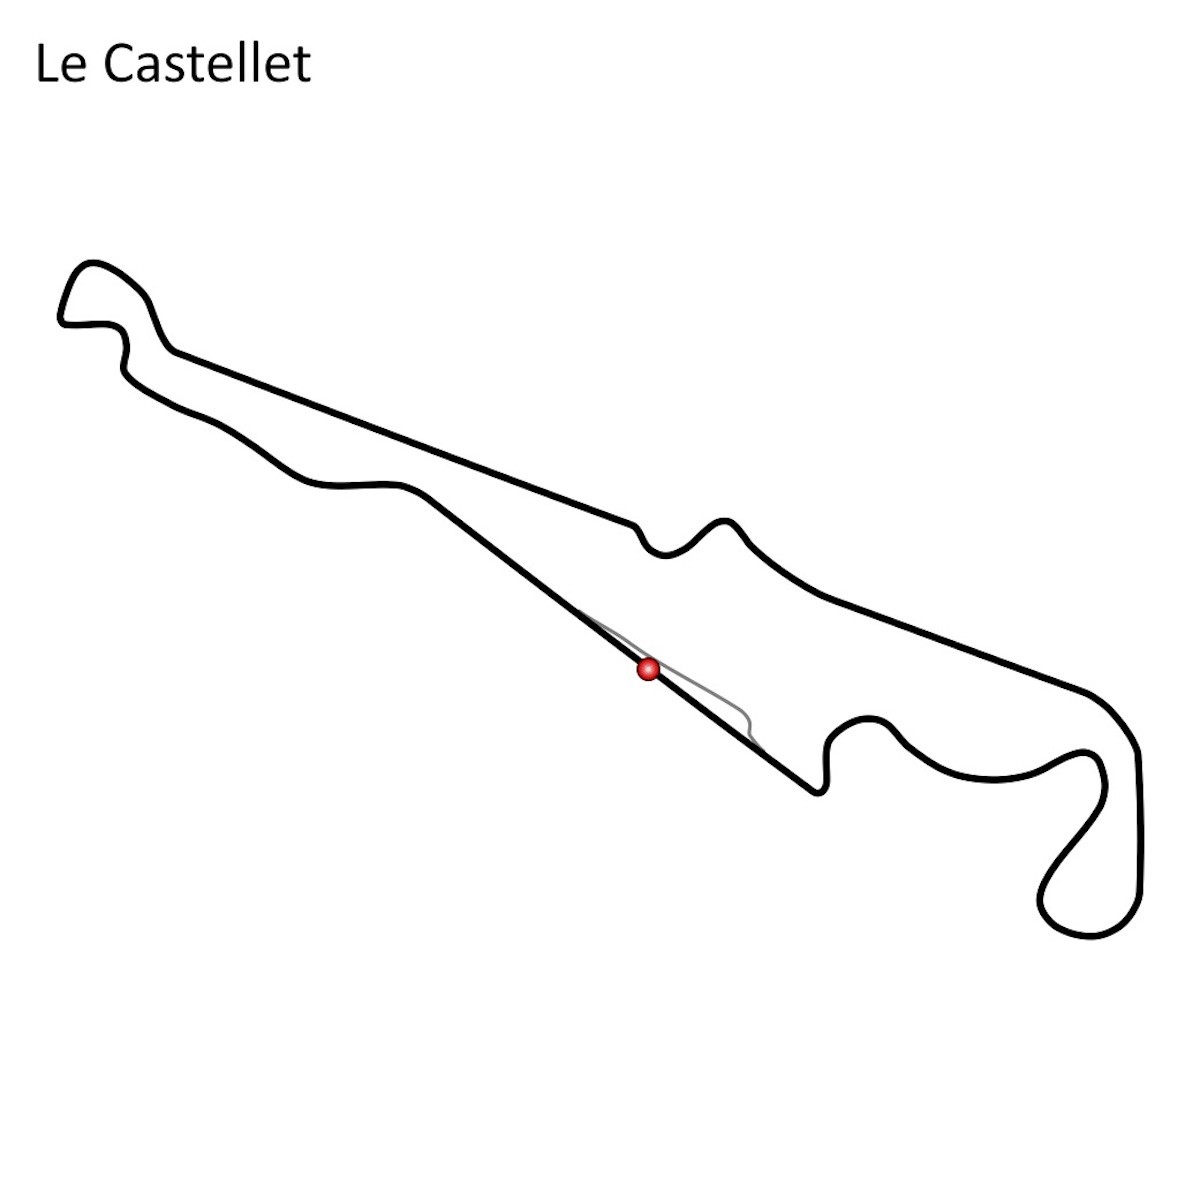 Grand Prix de France 2019